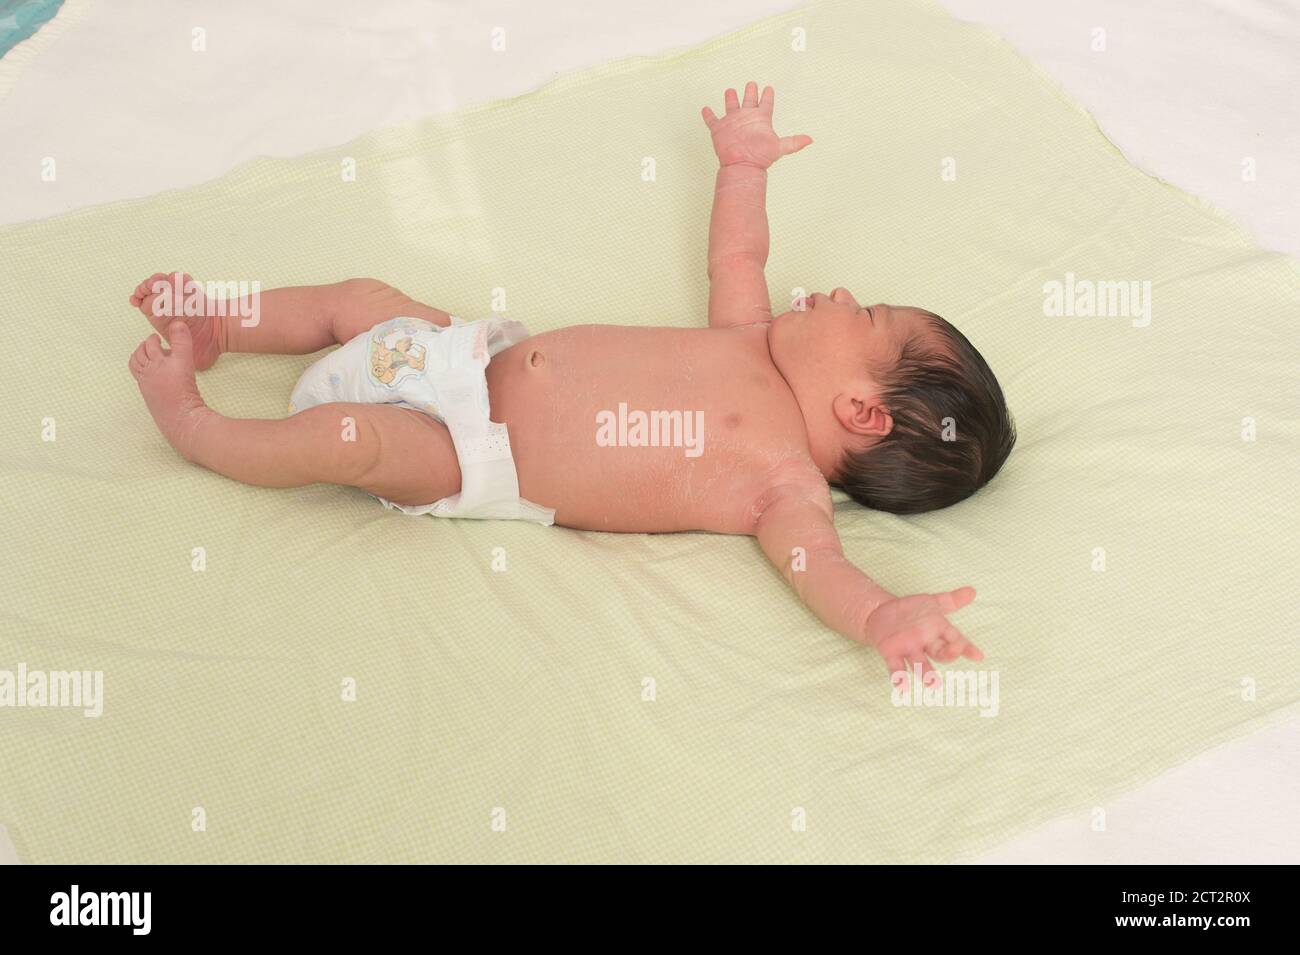 Nouveau-né de 1 semaines bébé garçon en couche sur le dos réflexe Startle Moro réflexe écaillage peau typique du nouveau-né Banque D'Images